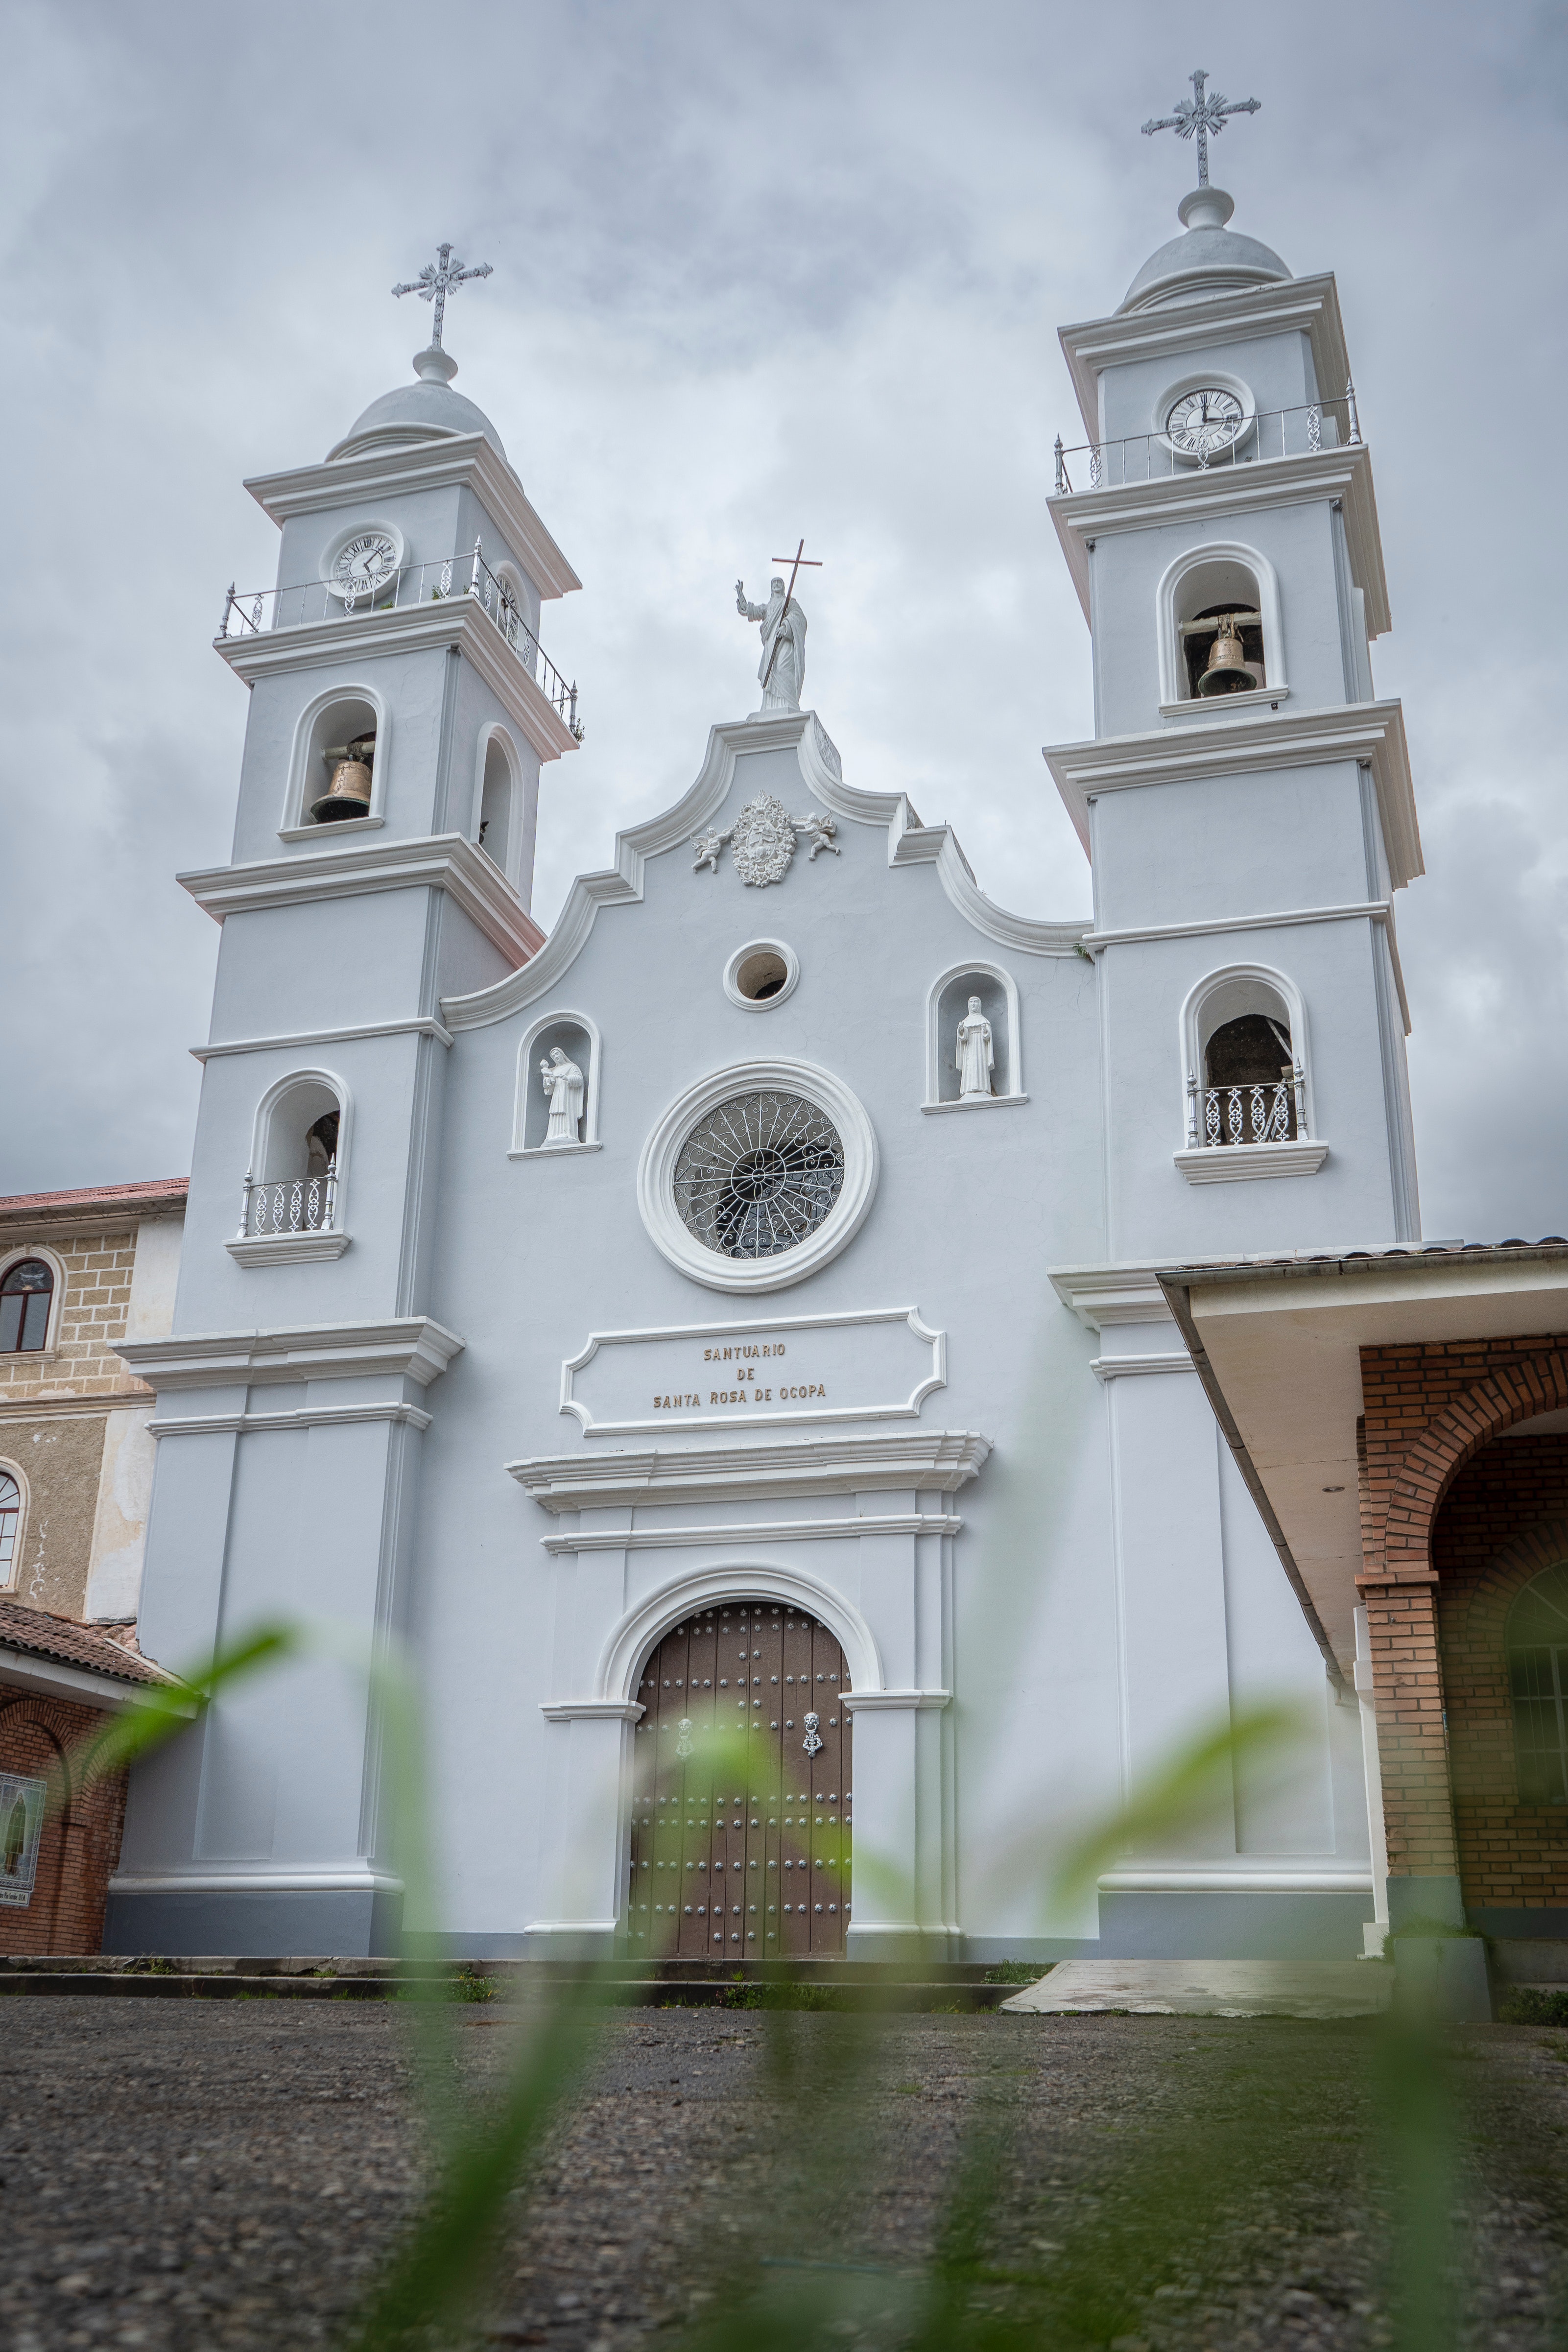 Facade of the Convent of Ocopa, Junin, Peru | Source: Pexels